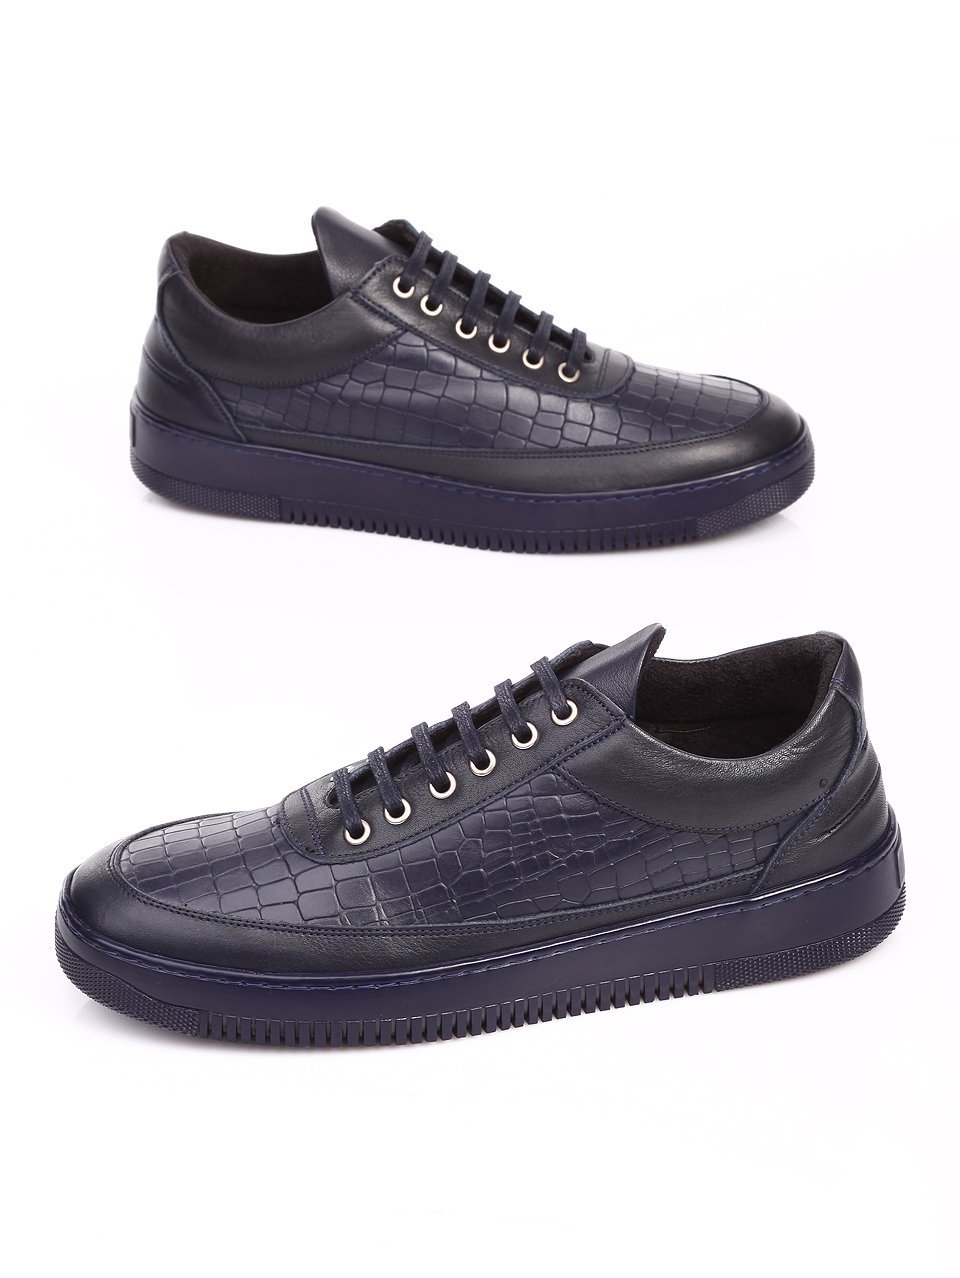 Ежедневни мъжки обувки от естествена кожа в синьо 7AT-16920 navy